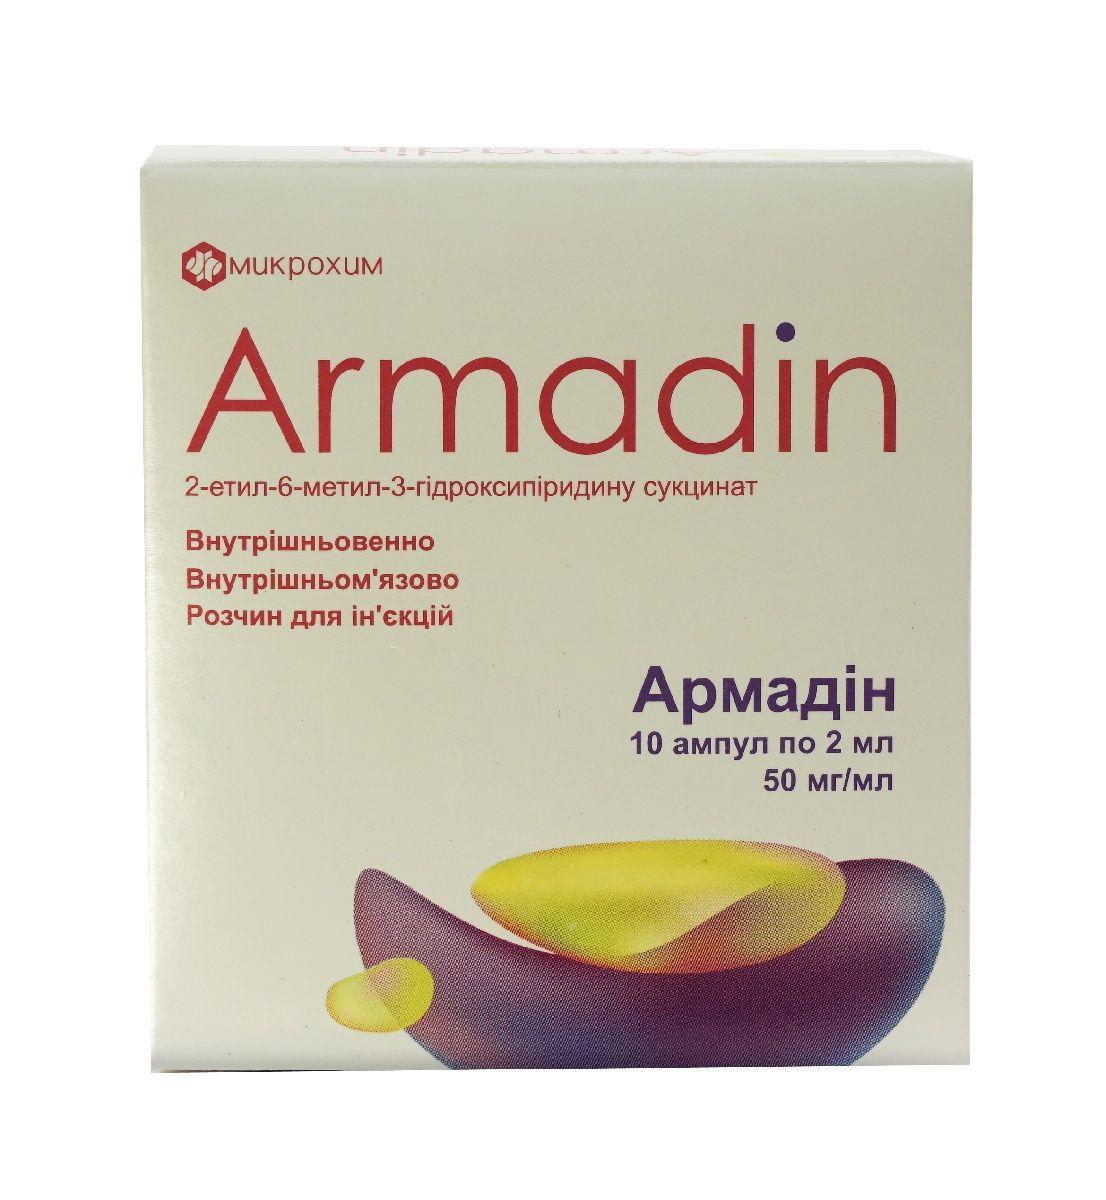 Армадин 50 мг/мл 2мл №10 раствор для инъекций: инструкция, цена, отзывы .